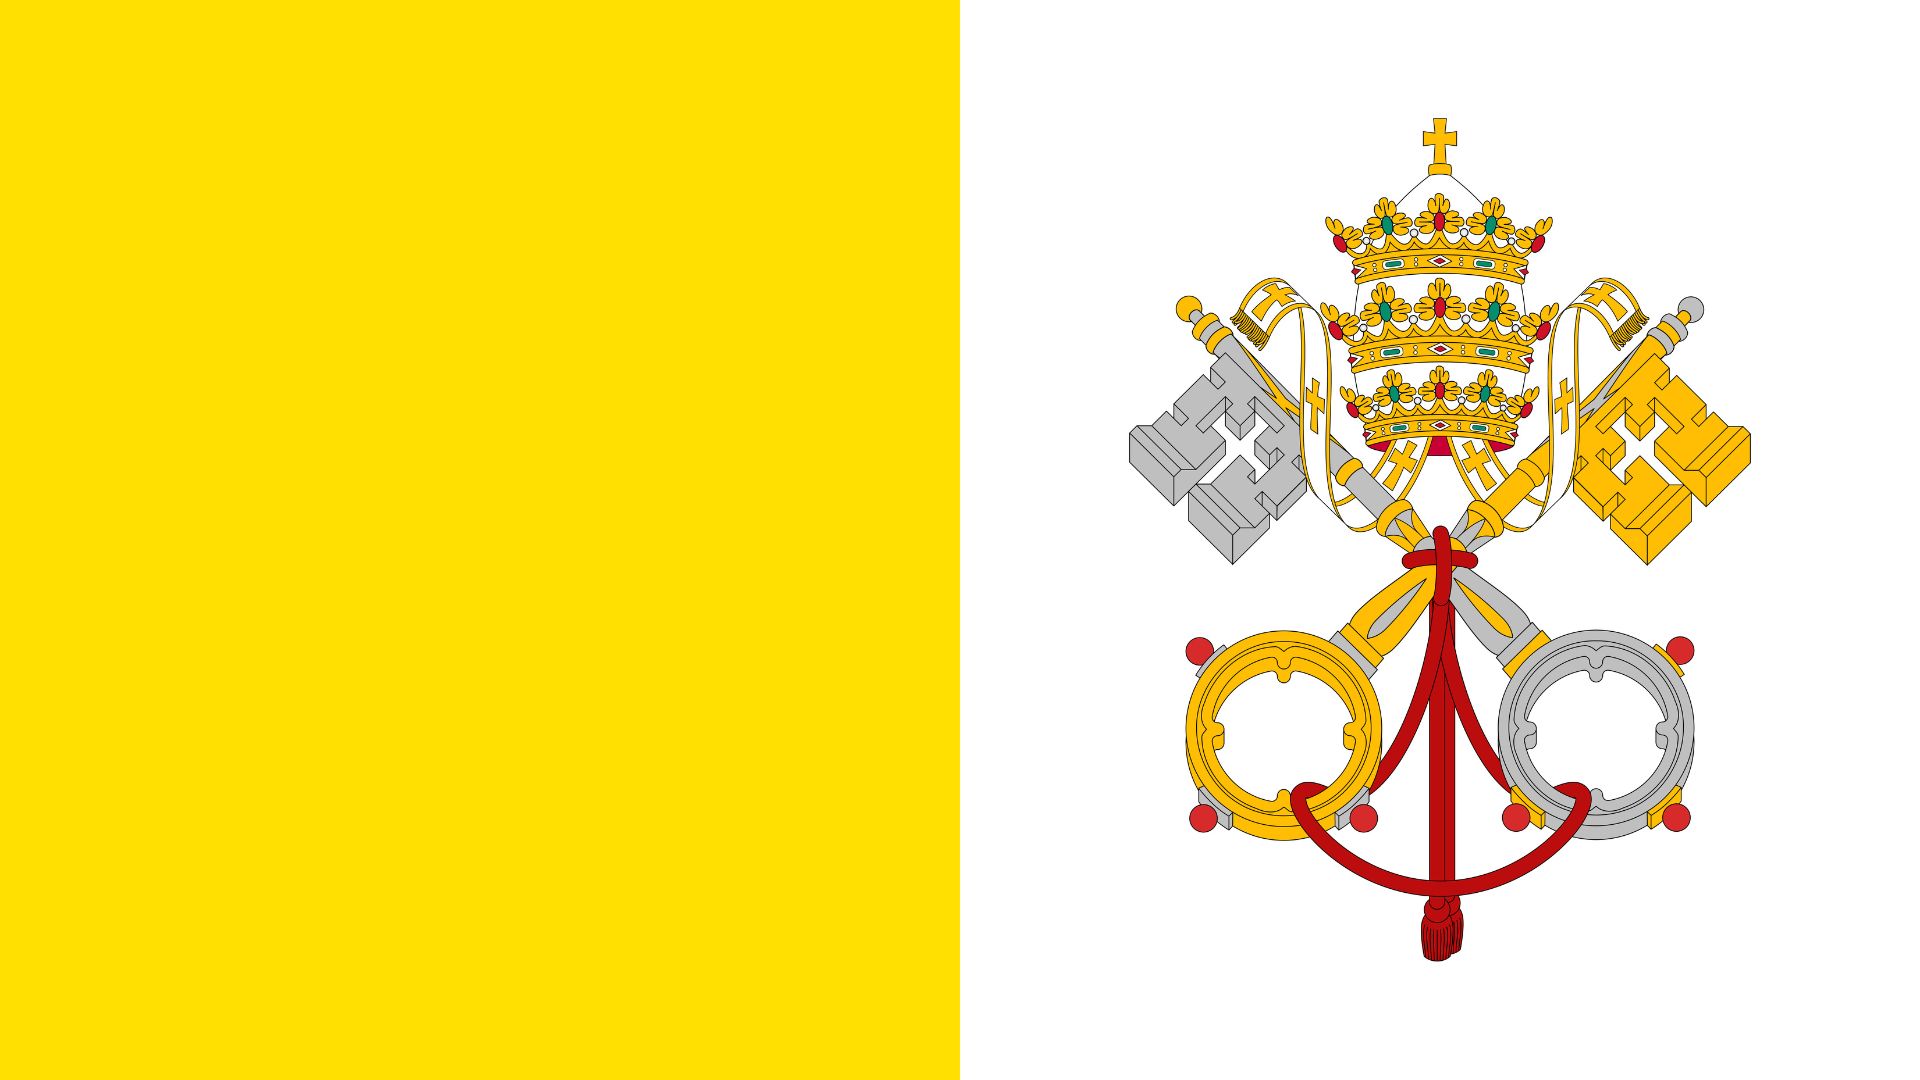 A bandeira do Vaticano consiste de duas faixas verticais, nas cores amarelo e branco, com o brasão de armas do Vaticano centrado na faixa de cor branca.